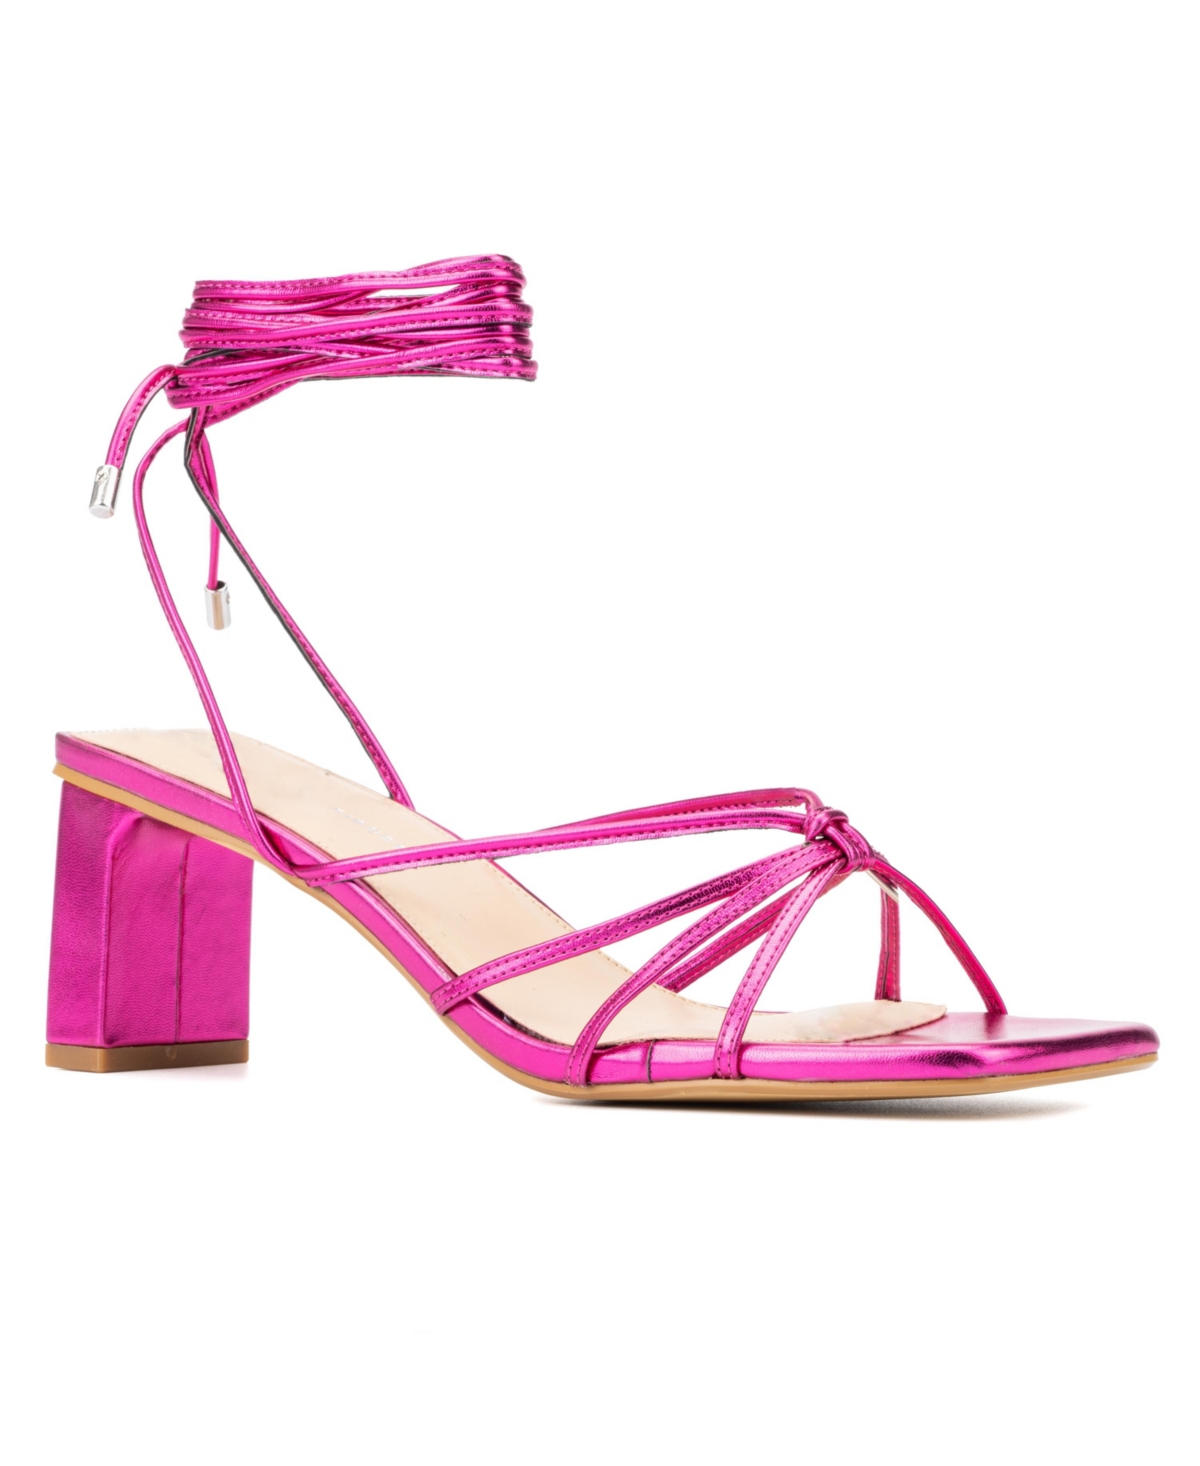 Fashion To Figure Women's Lana Wide Width Heels Sandals In Pink